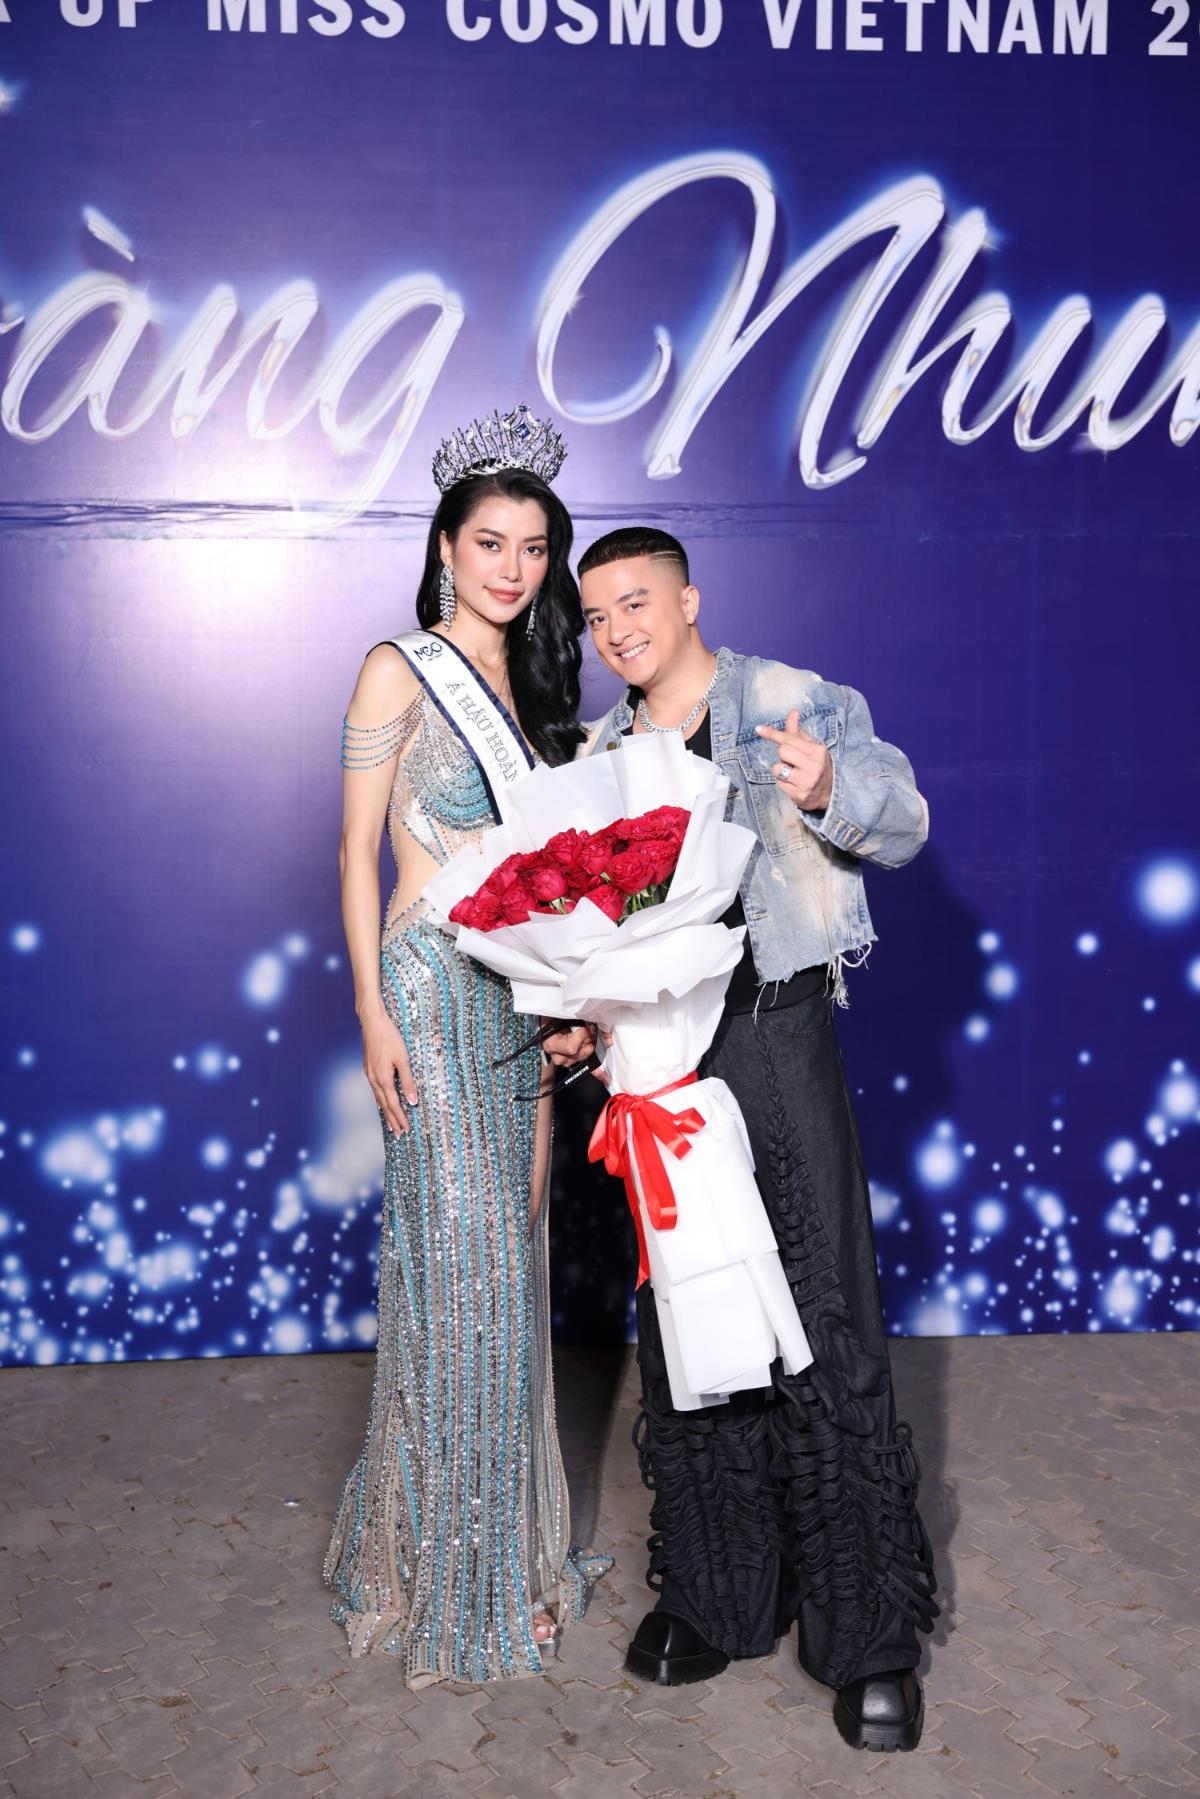 Miss Cosmo Vietnam – Hoa hậu Hoàn vũ Việt Nam 2023 Hoàng Nhung 5 Á hậu Hoàng Nhung hạnh phúc trong tiệc tri ân sau đăng quang   